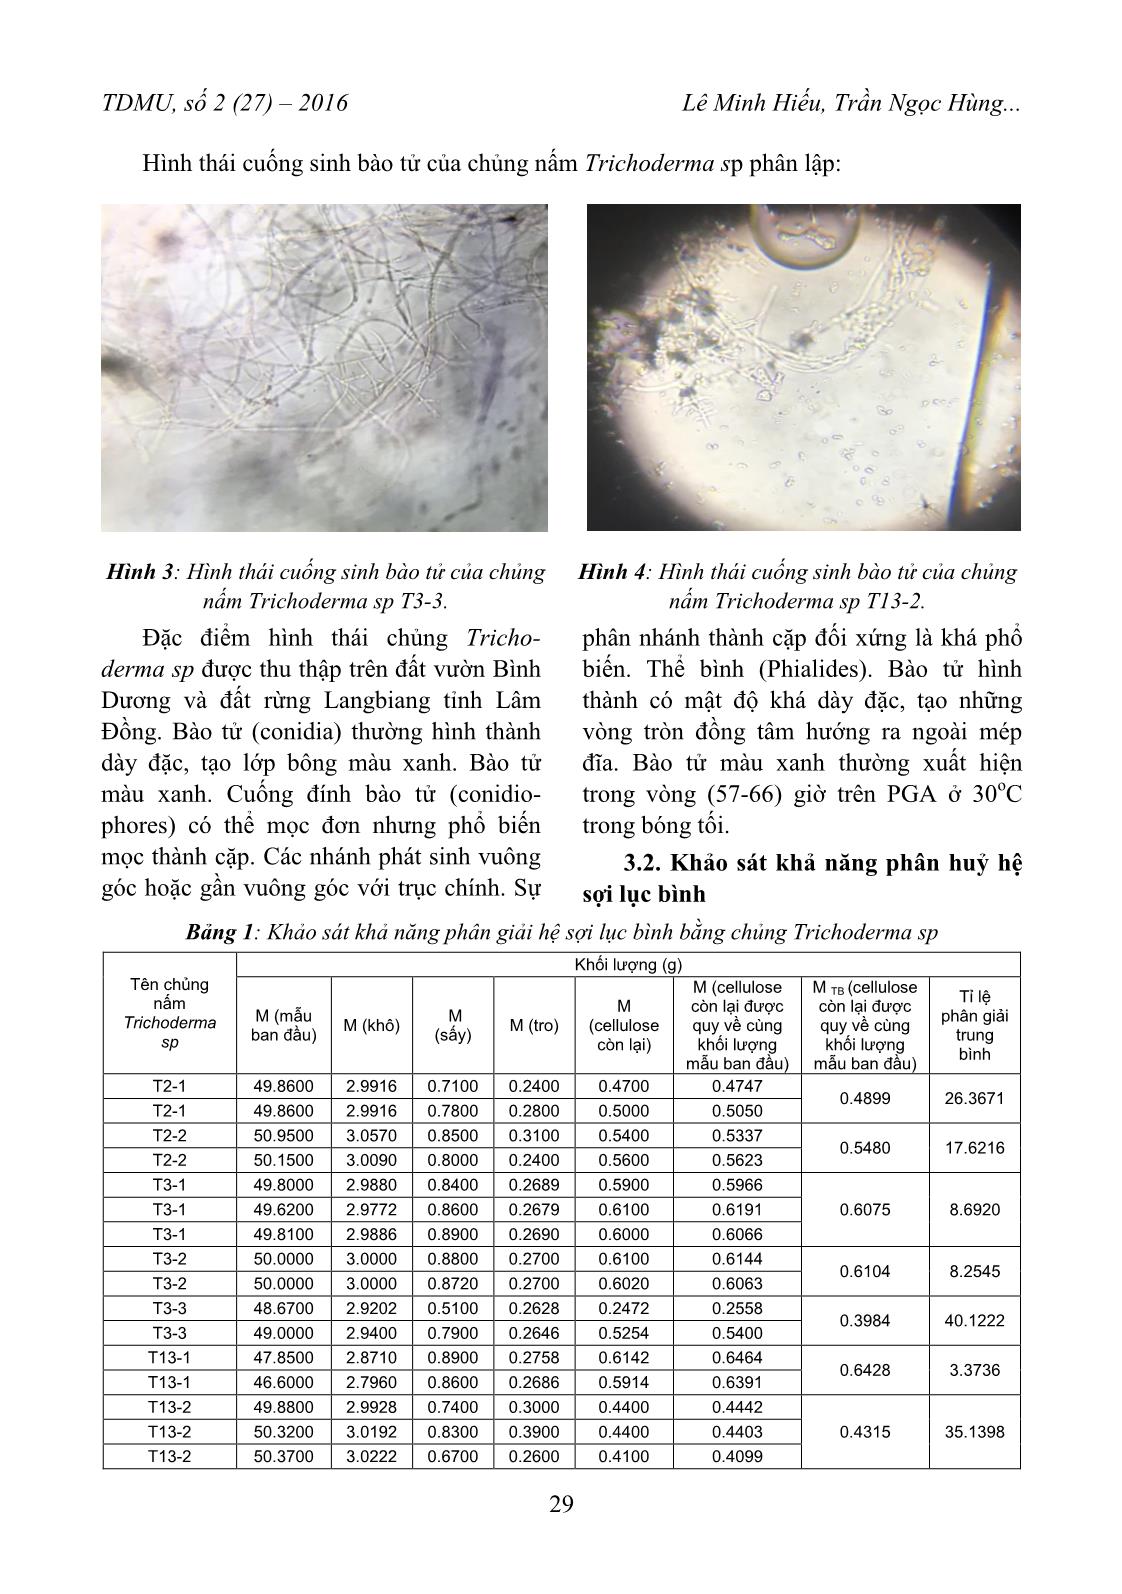 Đánh giá khả năng phân huỷ hệ sợi của lục bình eichhornia crassipes bằng chủng nấm trichoderma SP trang 5